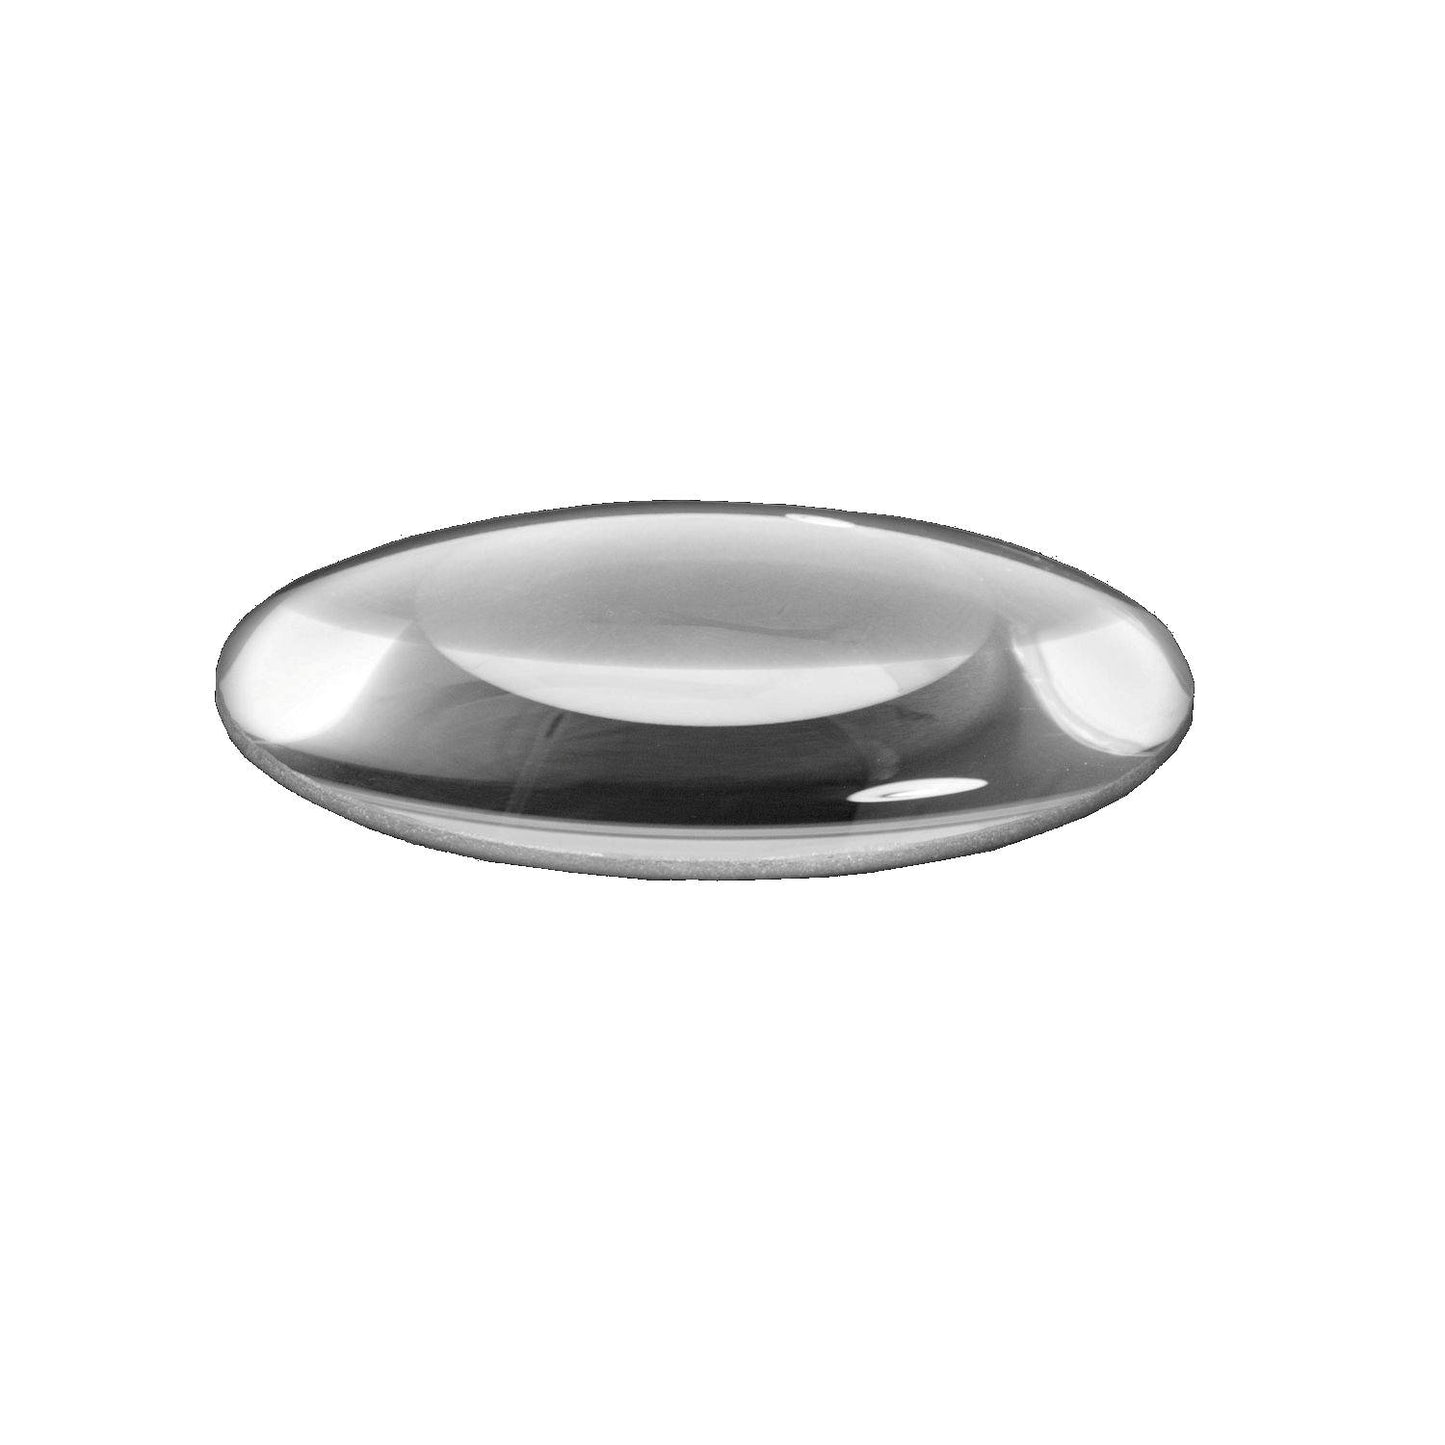 Lumeno Lentille en verre clair ou standard en 3, 5 ou 8 dioptries avec 125 mm